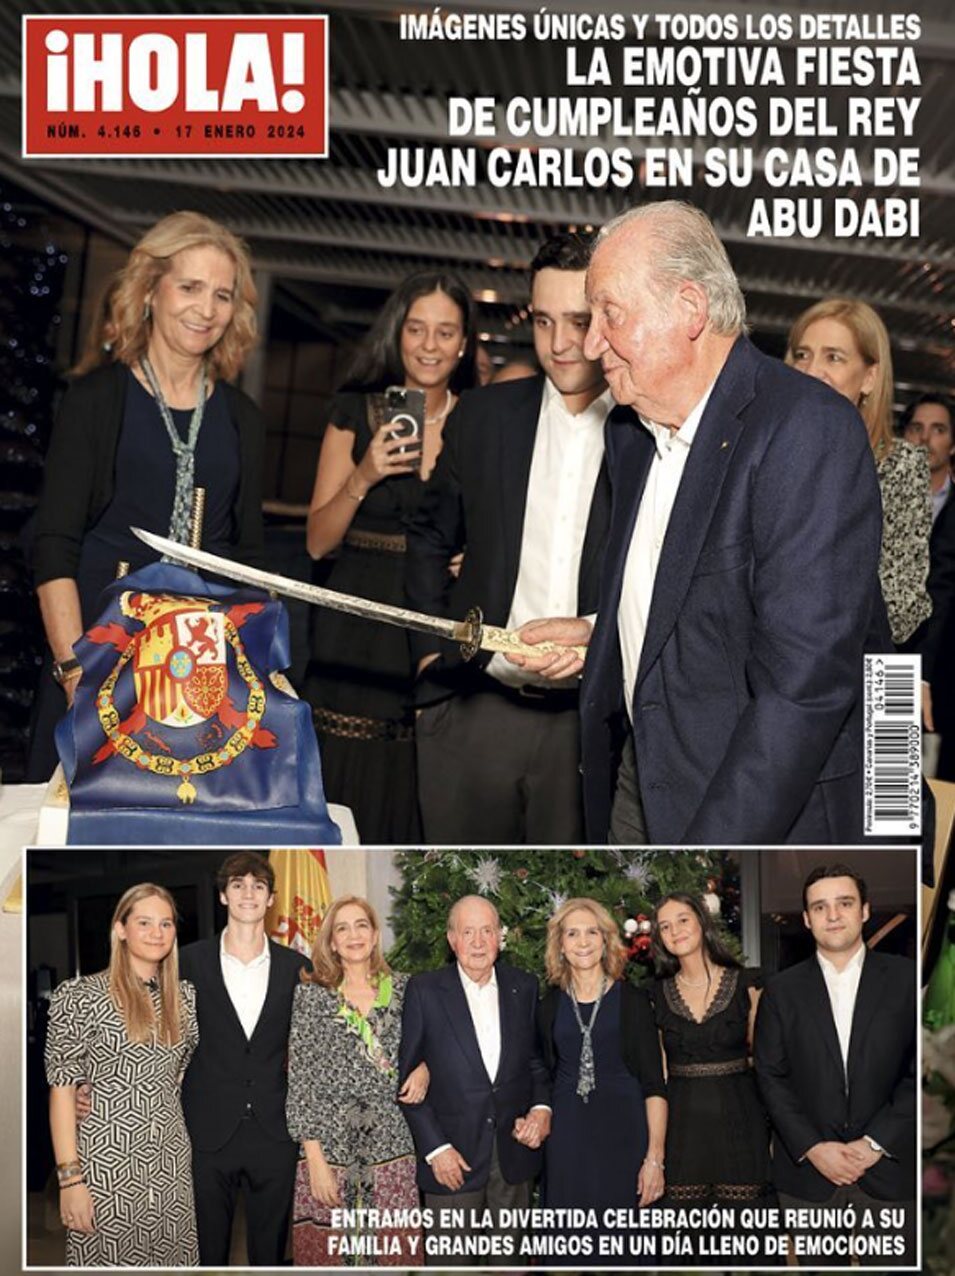  Rey Juan Carlos, sus hijas y cuatro de sus nietos en la fiesta del Rey Juan Carlos